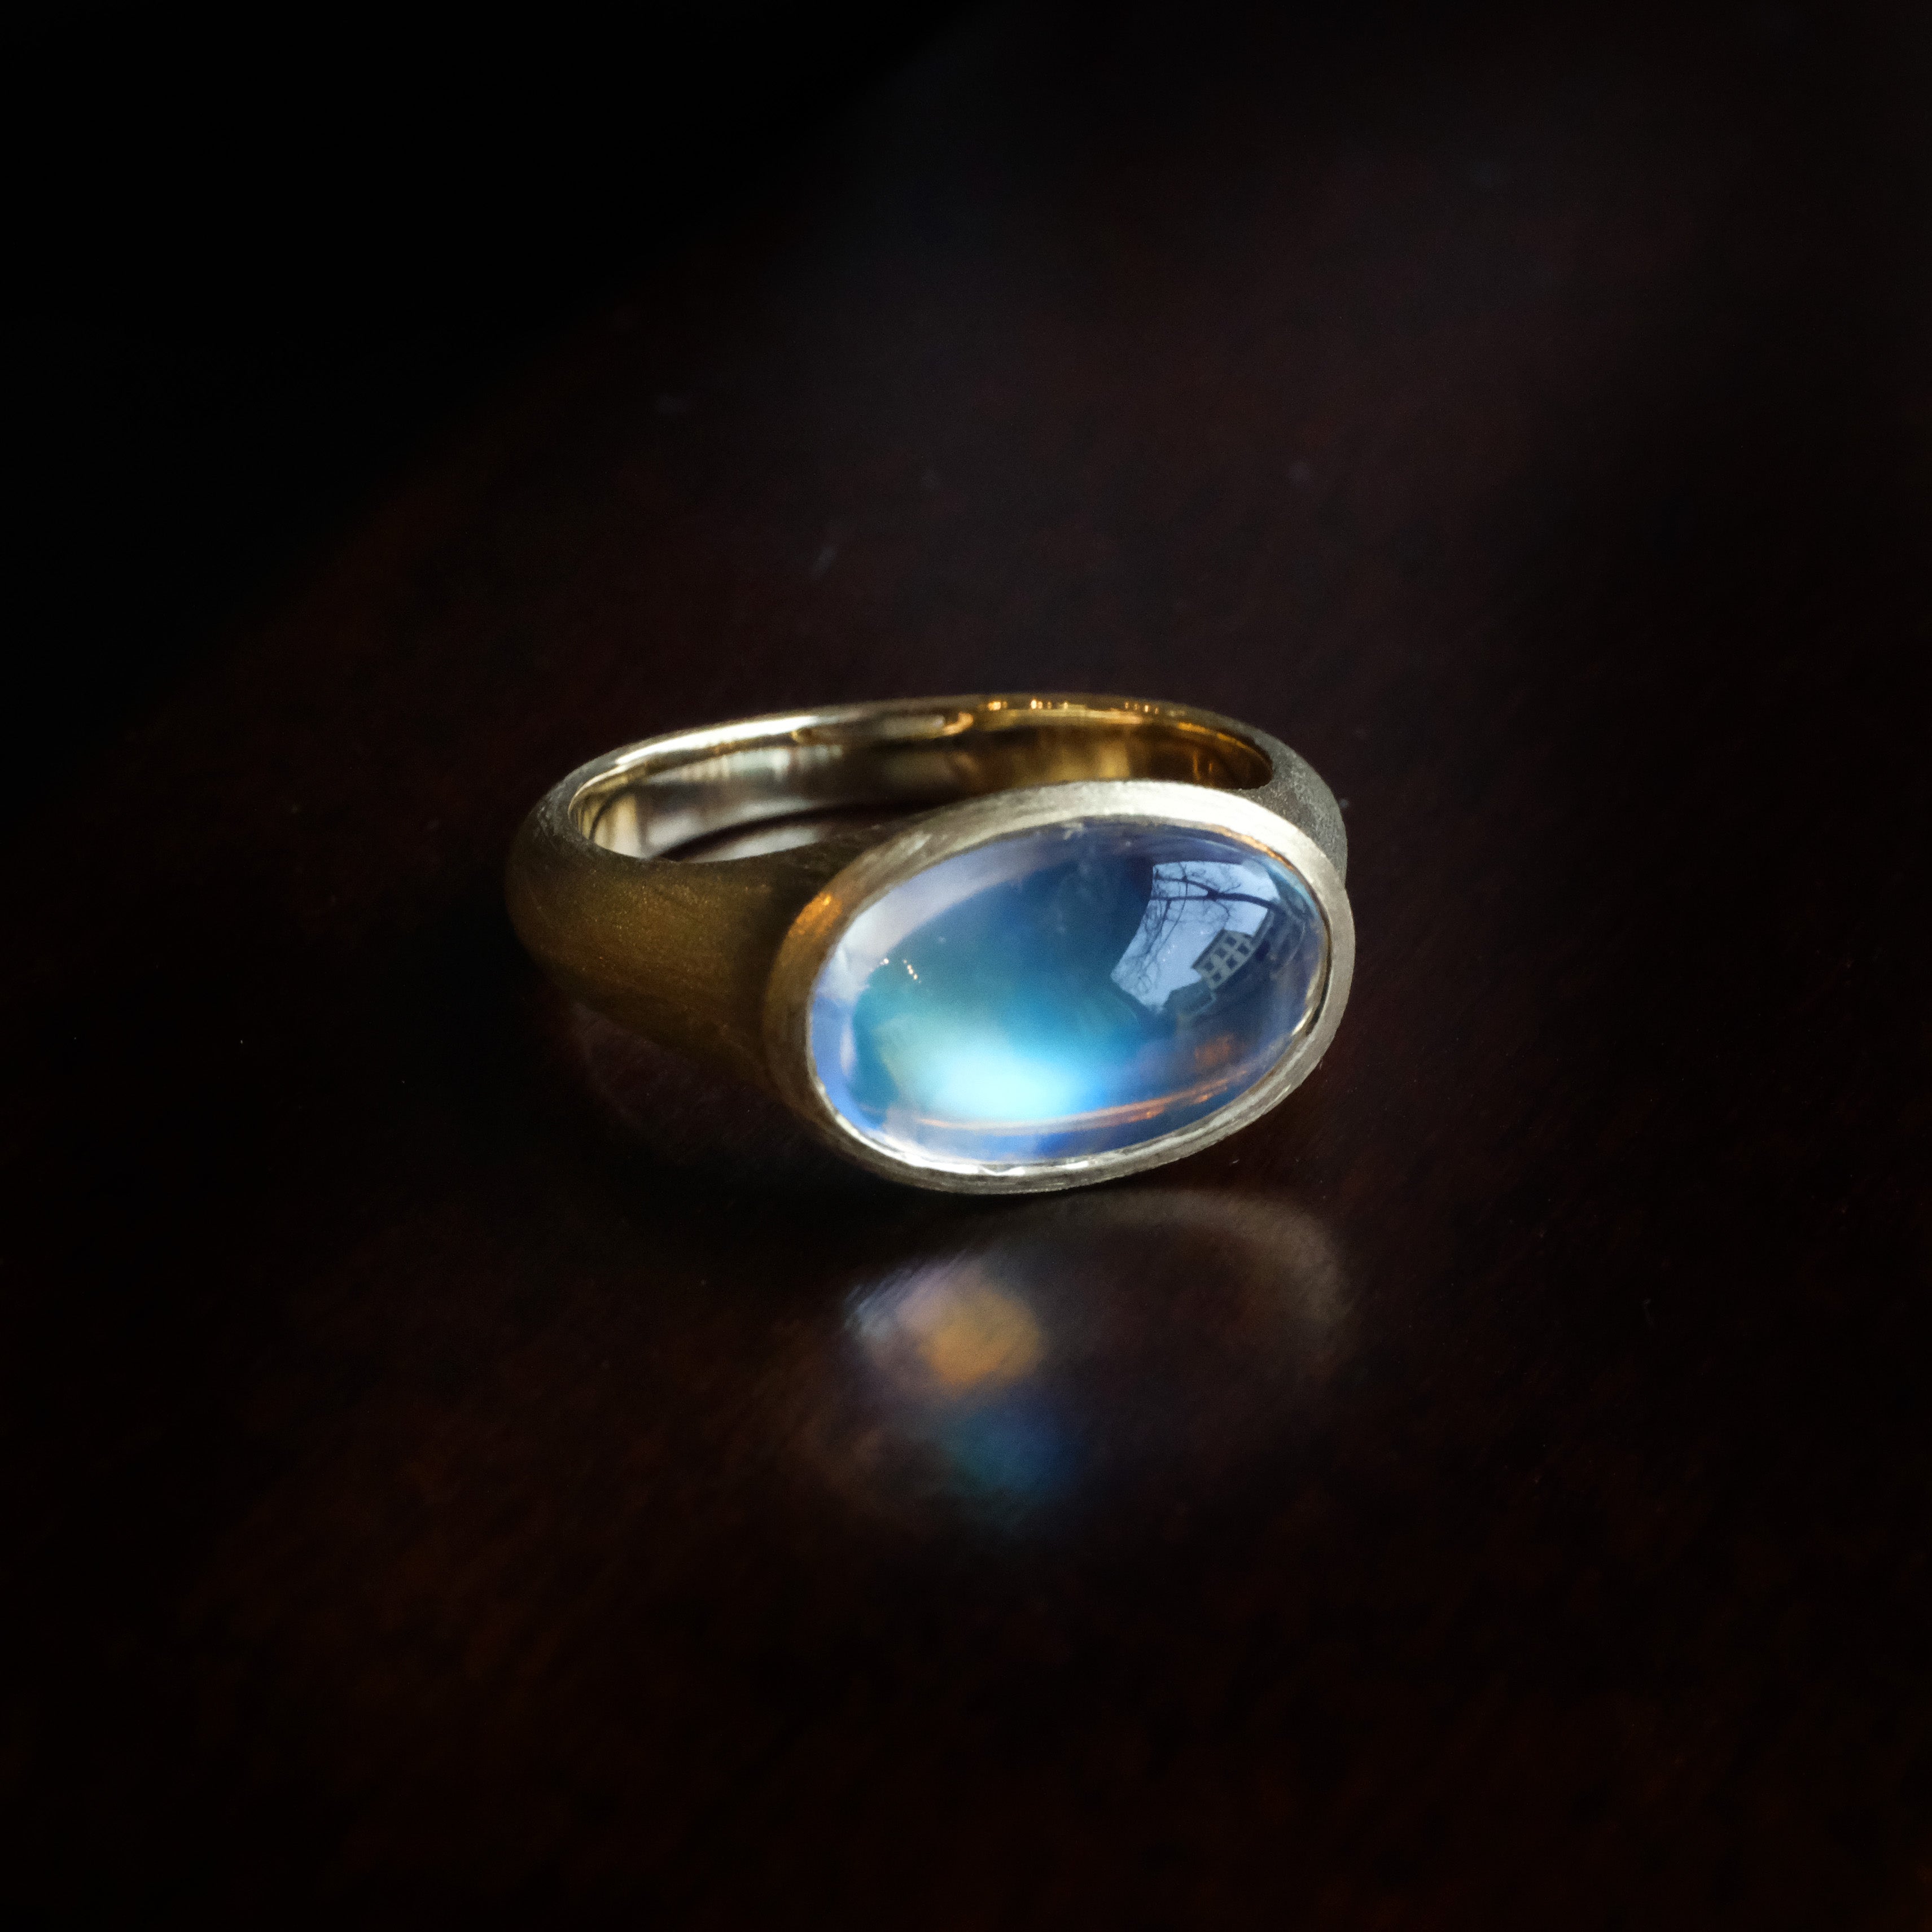 14k + Moonstone Gossamer Ring - One of a Kind